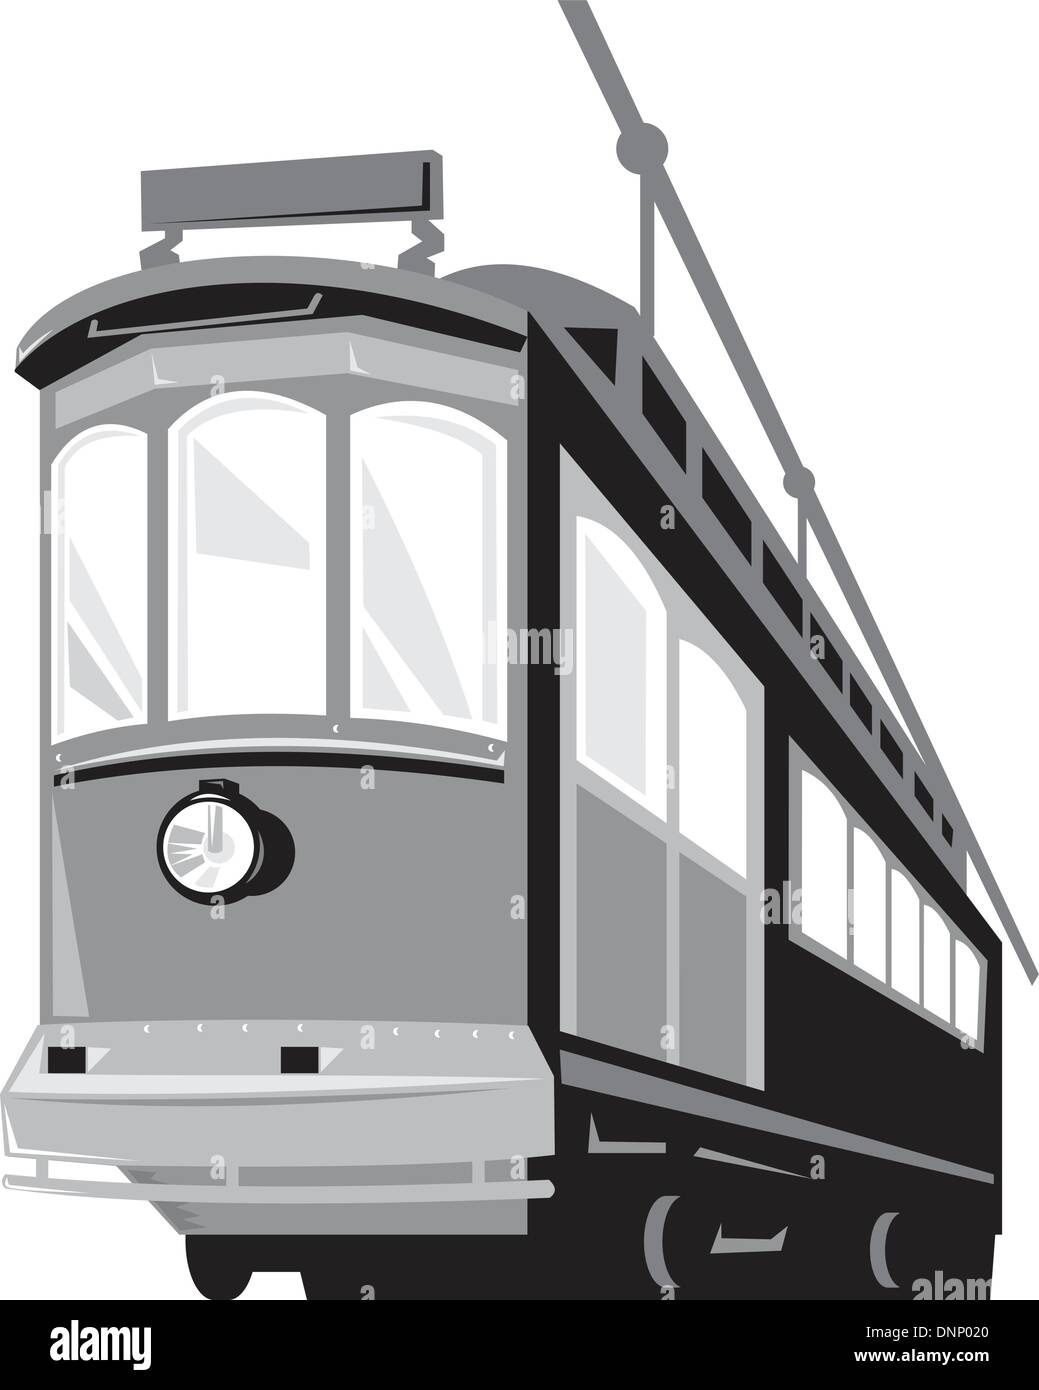 Illustration einer Oldtimer-Straßenbahn trainieren Straßenbahn aus einem flachen Winkel auf isolierten weißen Hintergrund getan im retro-Stil betrachtet. Stock Vektor